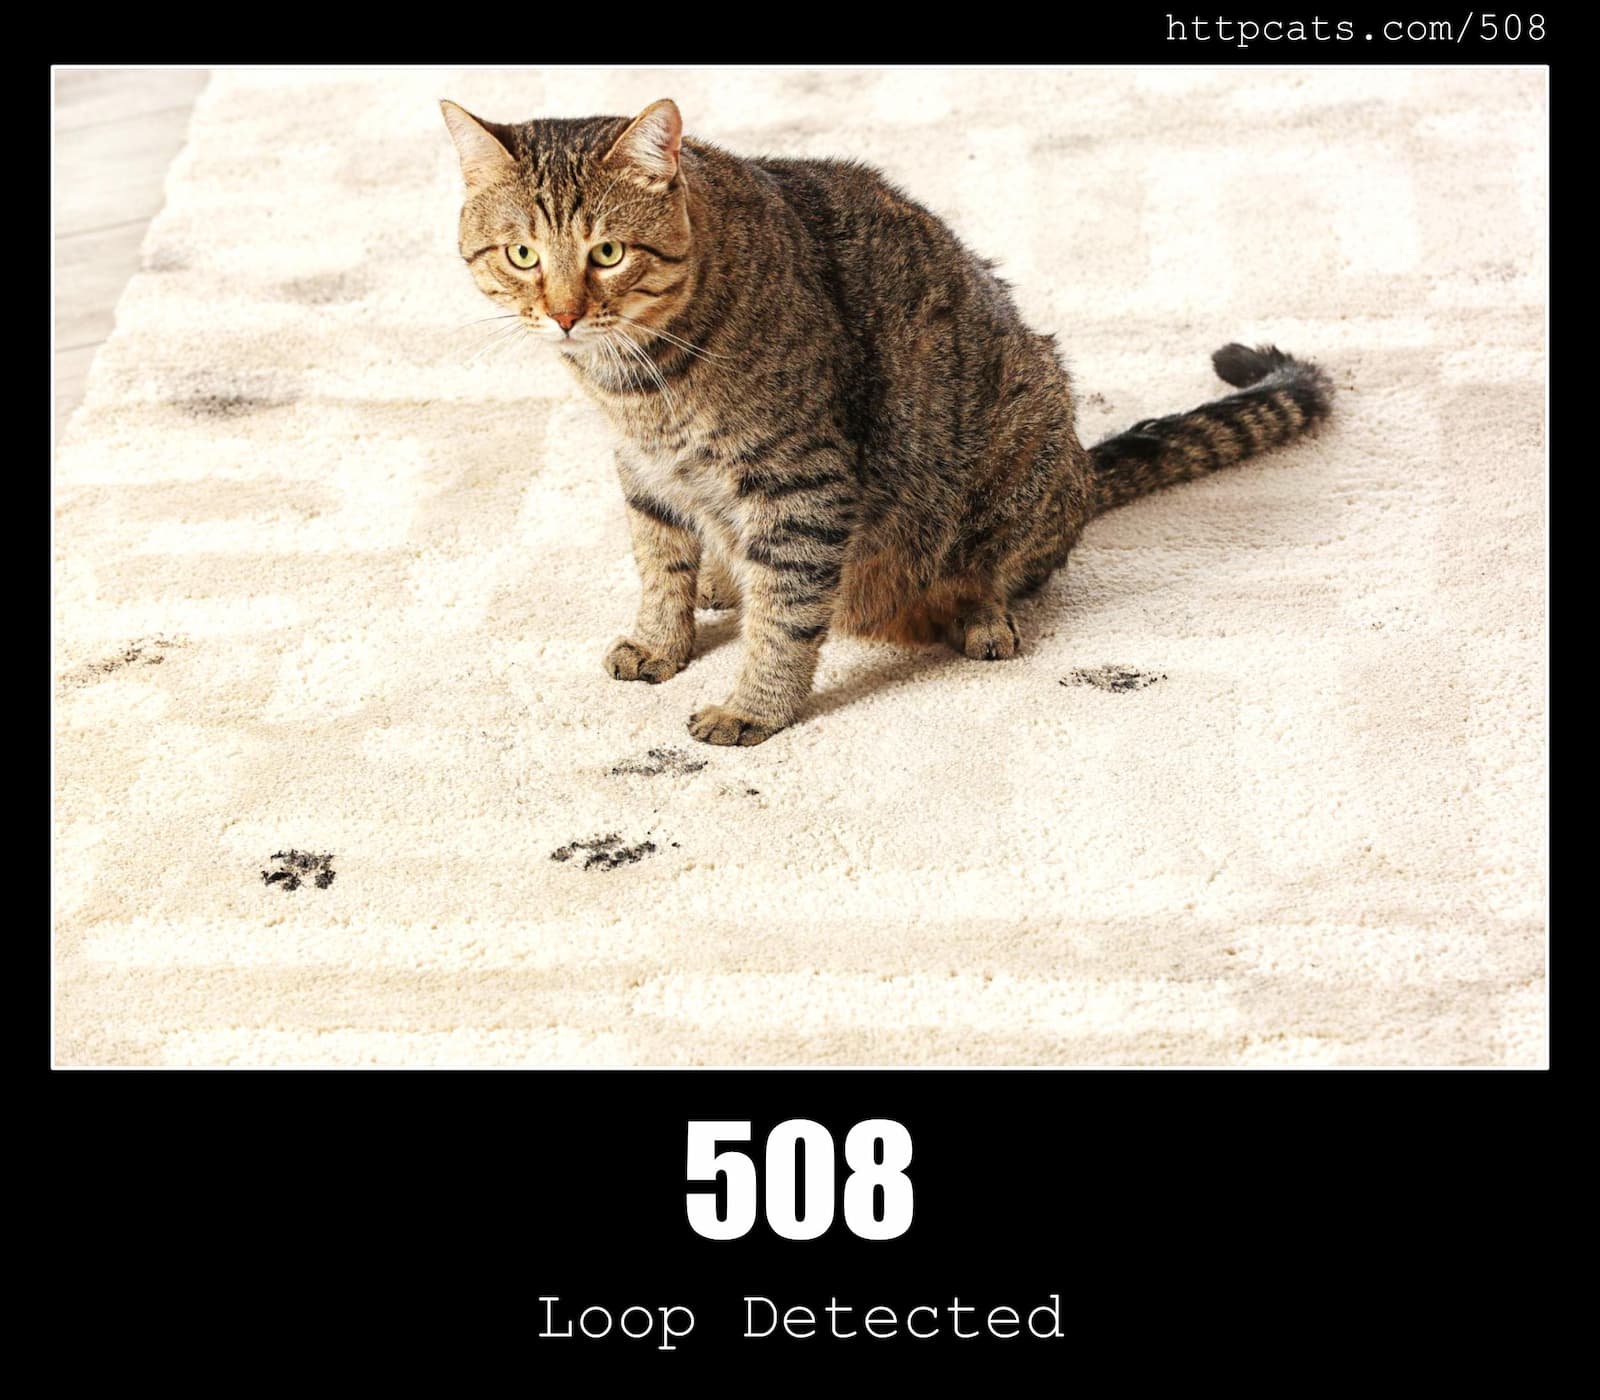 HTTP Status Code 508 Loop Detected & Cats